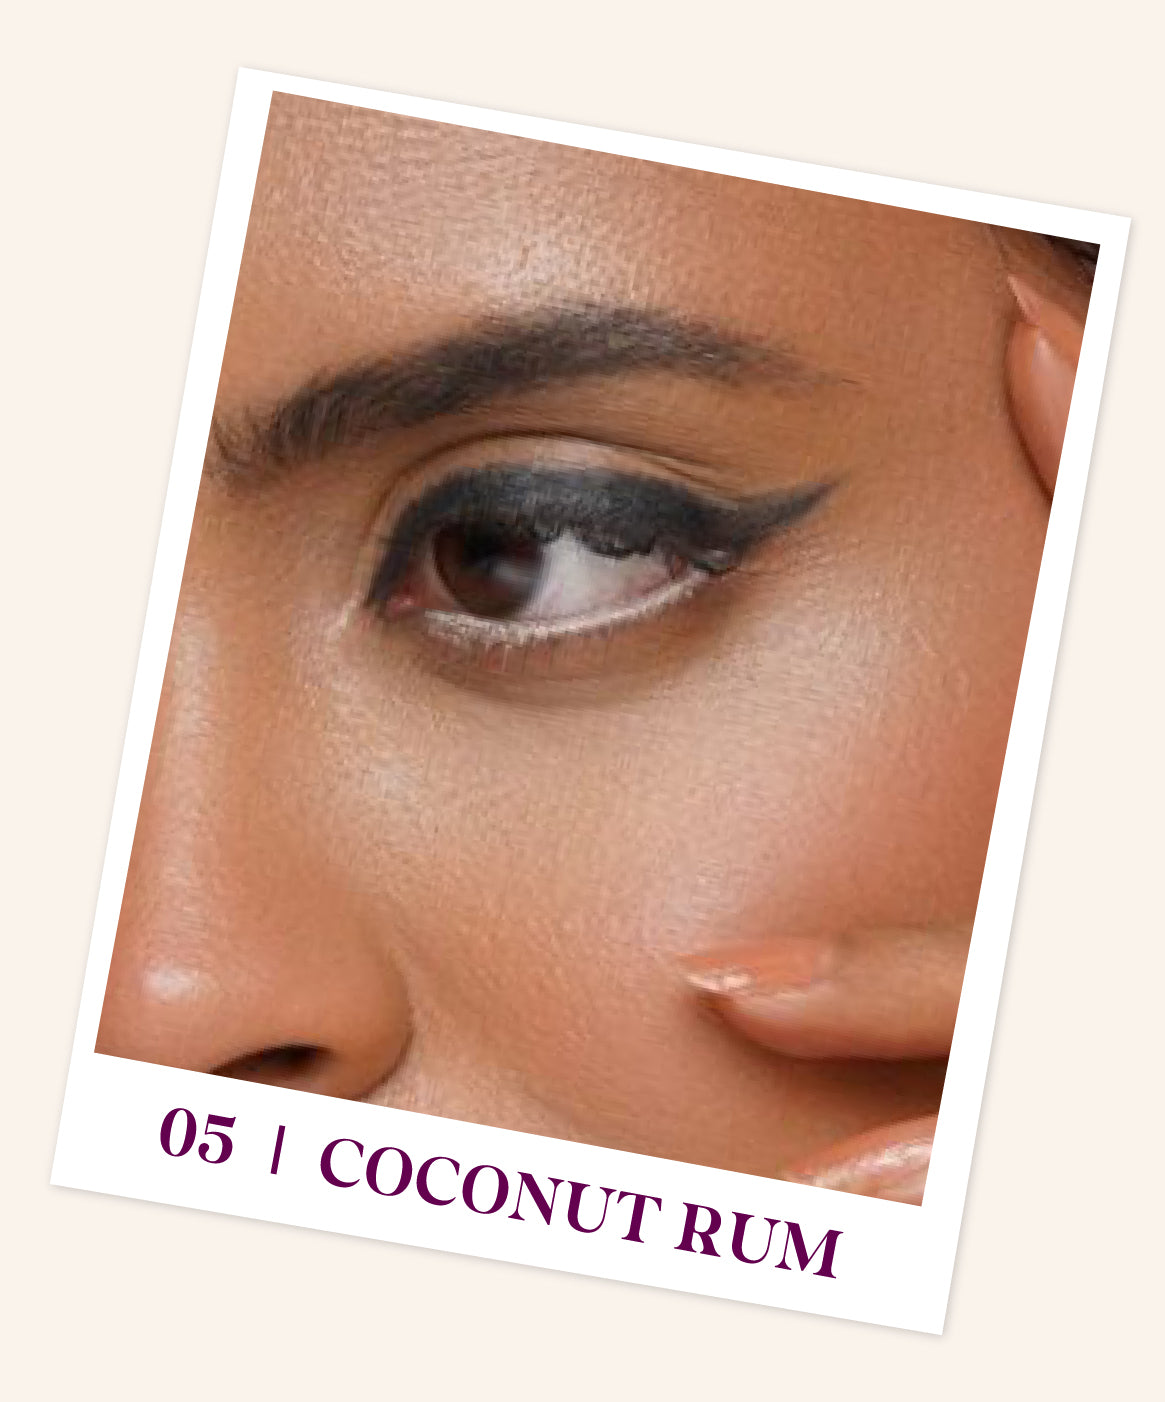 Coconut Rum 05 - Black & Matte nude cream